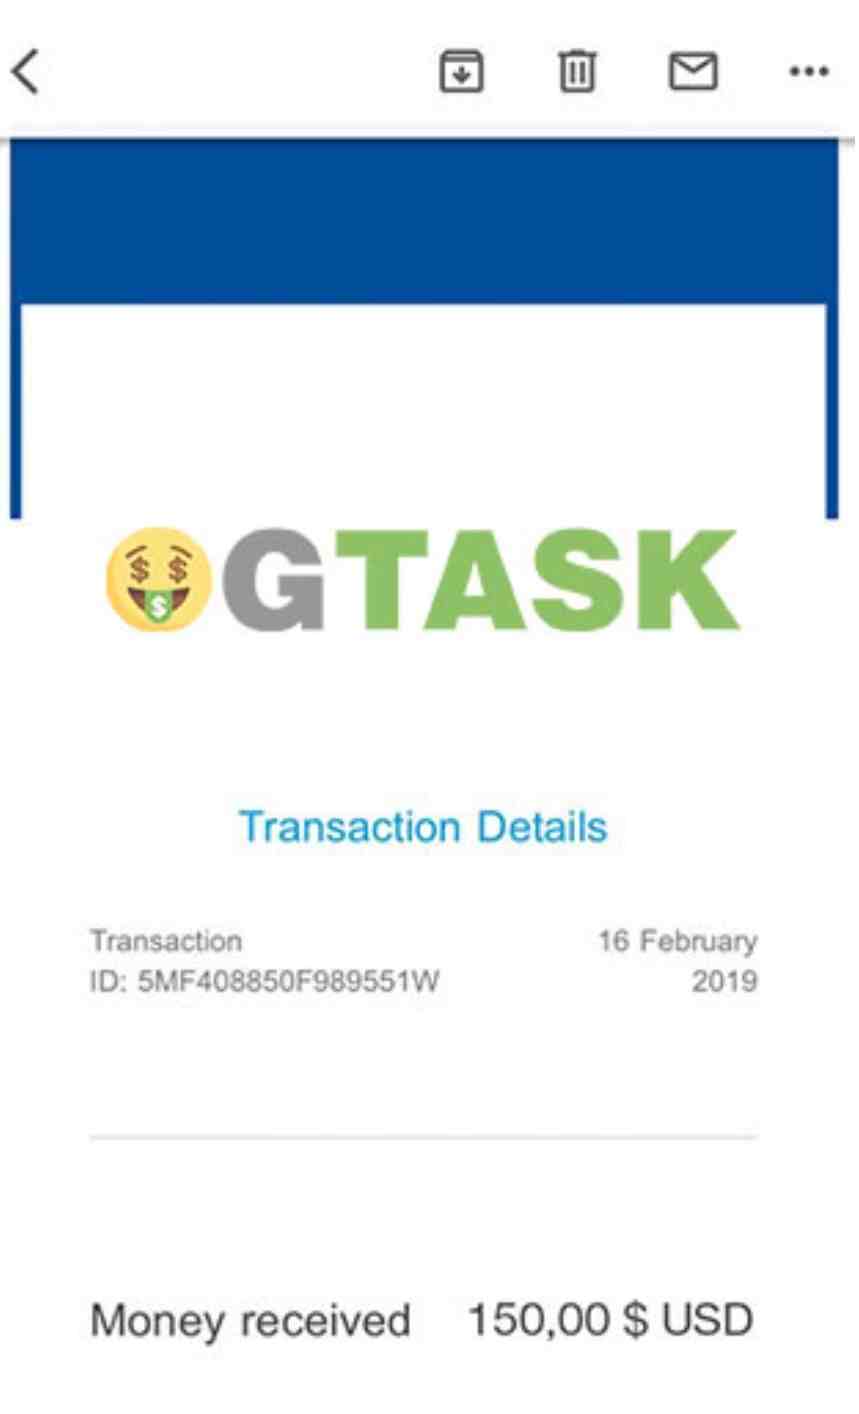 OGTask fake payment 